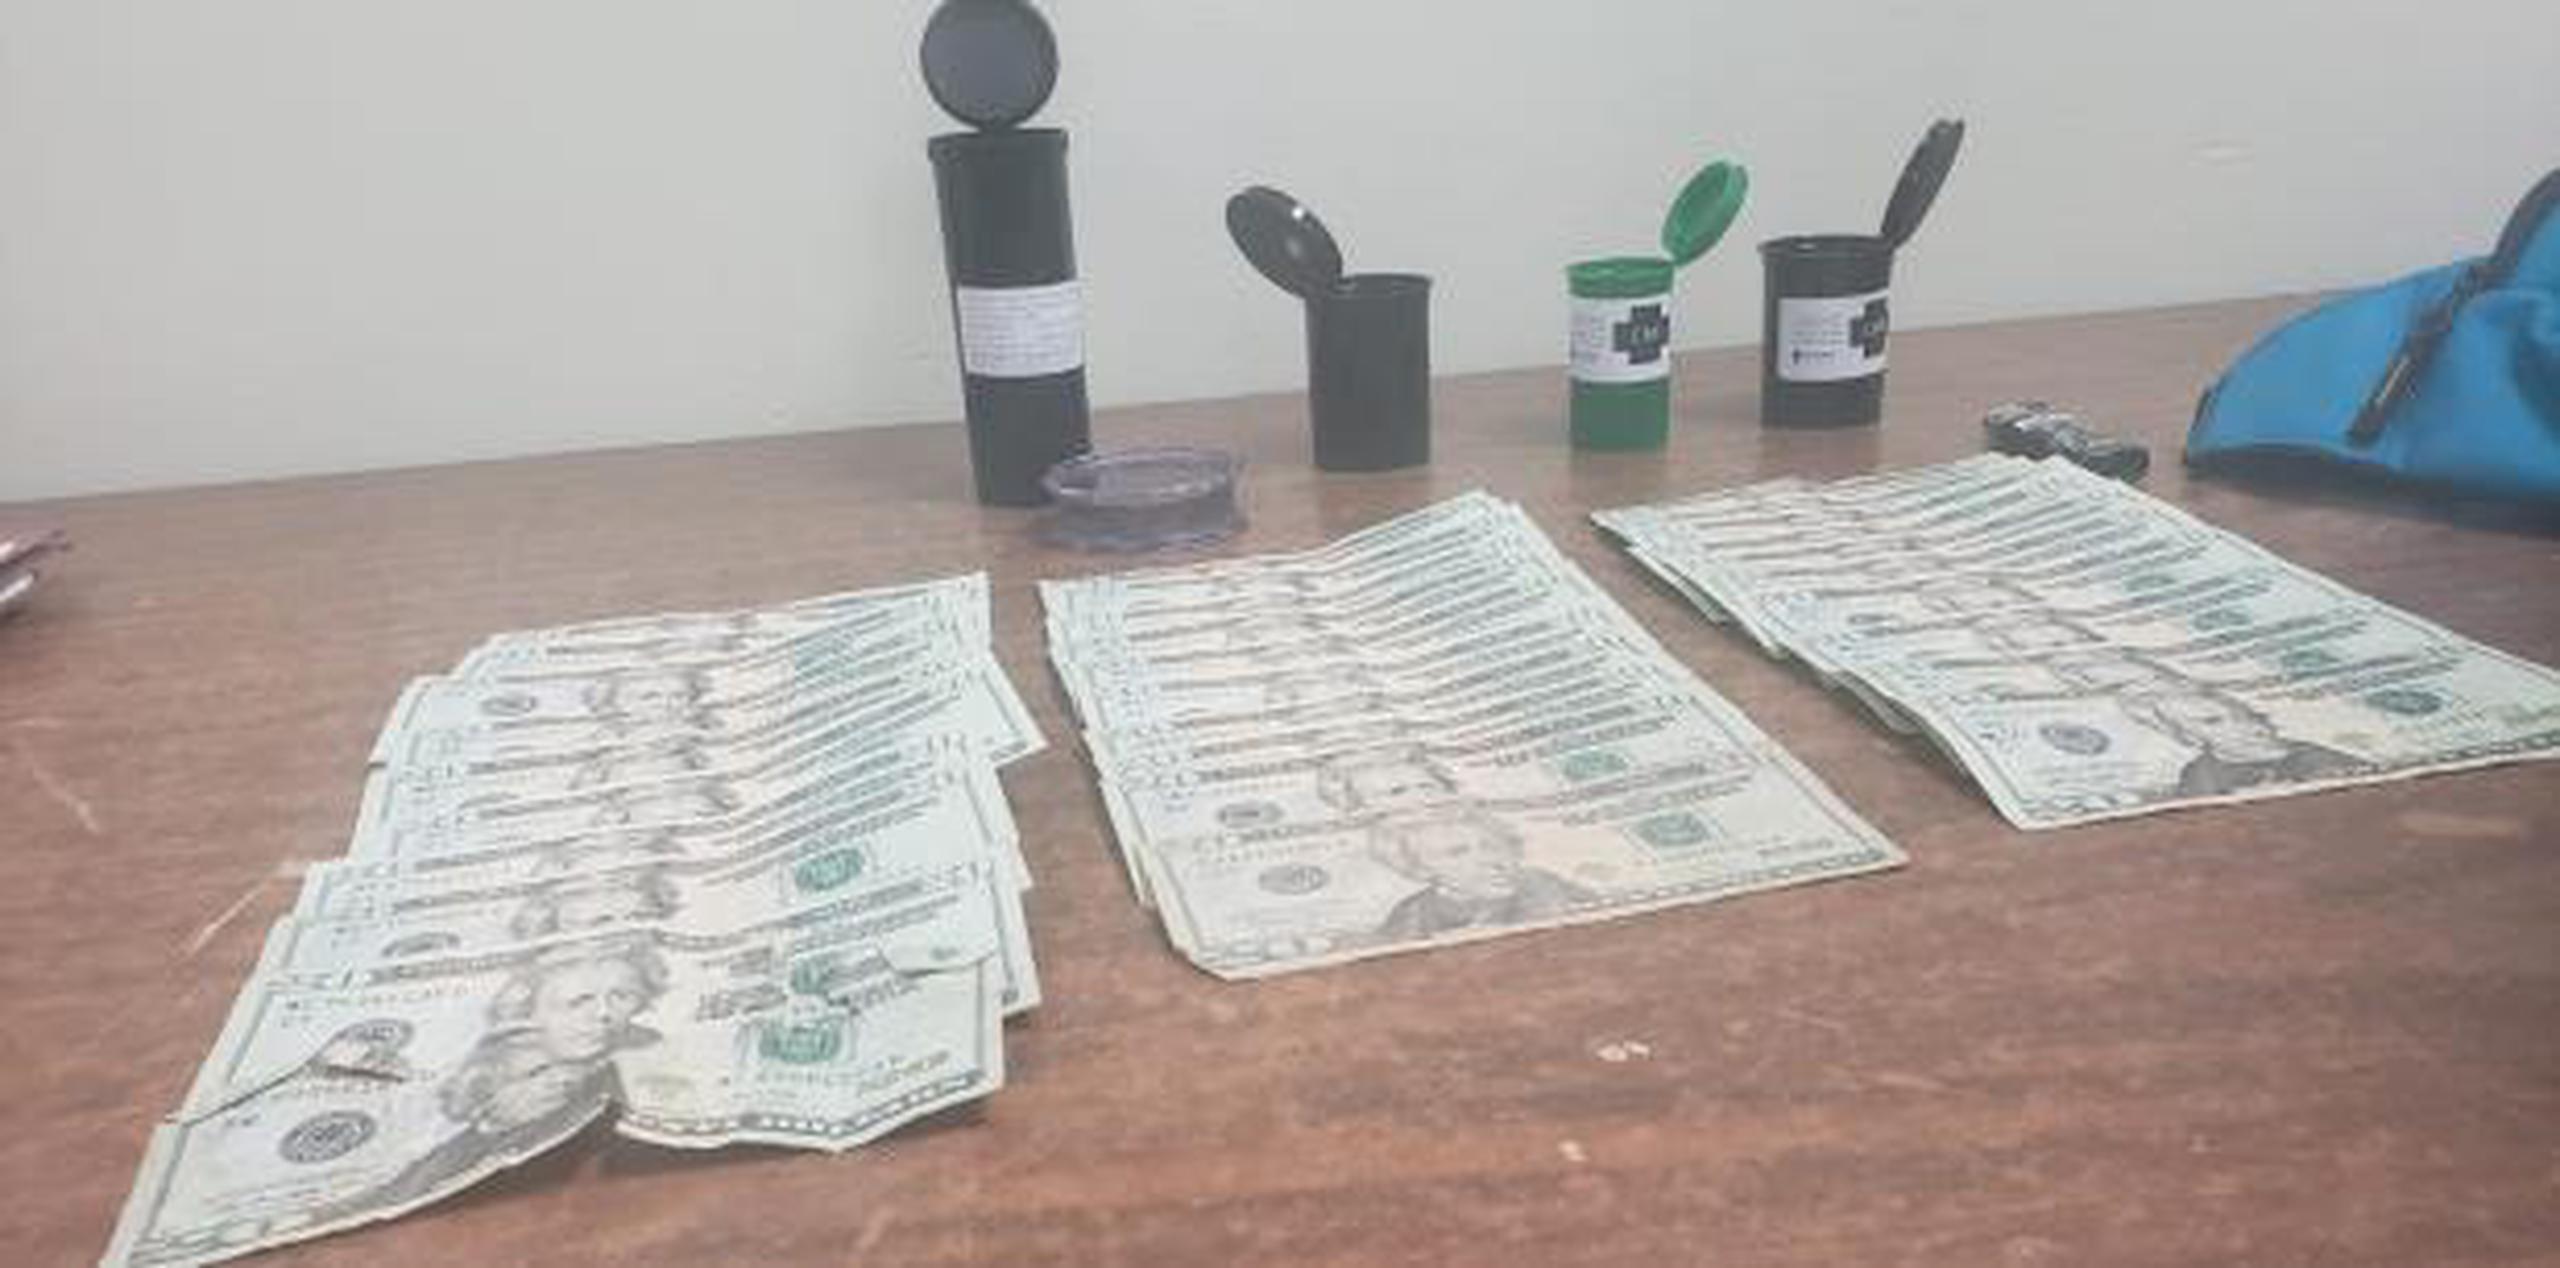 A uno de los arrestaron le ocuparon cuatro envases plásticos con picadura de marihuana y $650 en efectivo. (Suministrada)